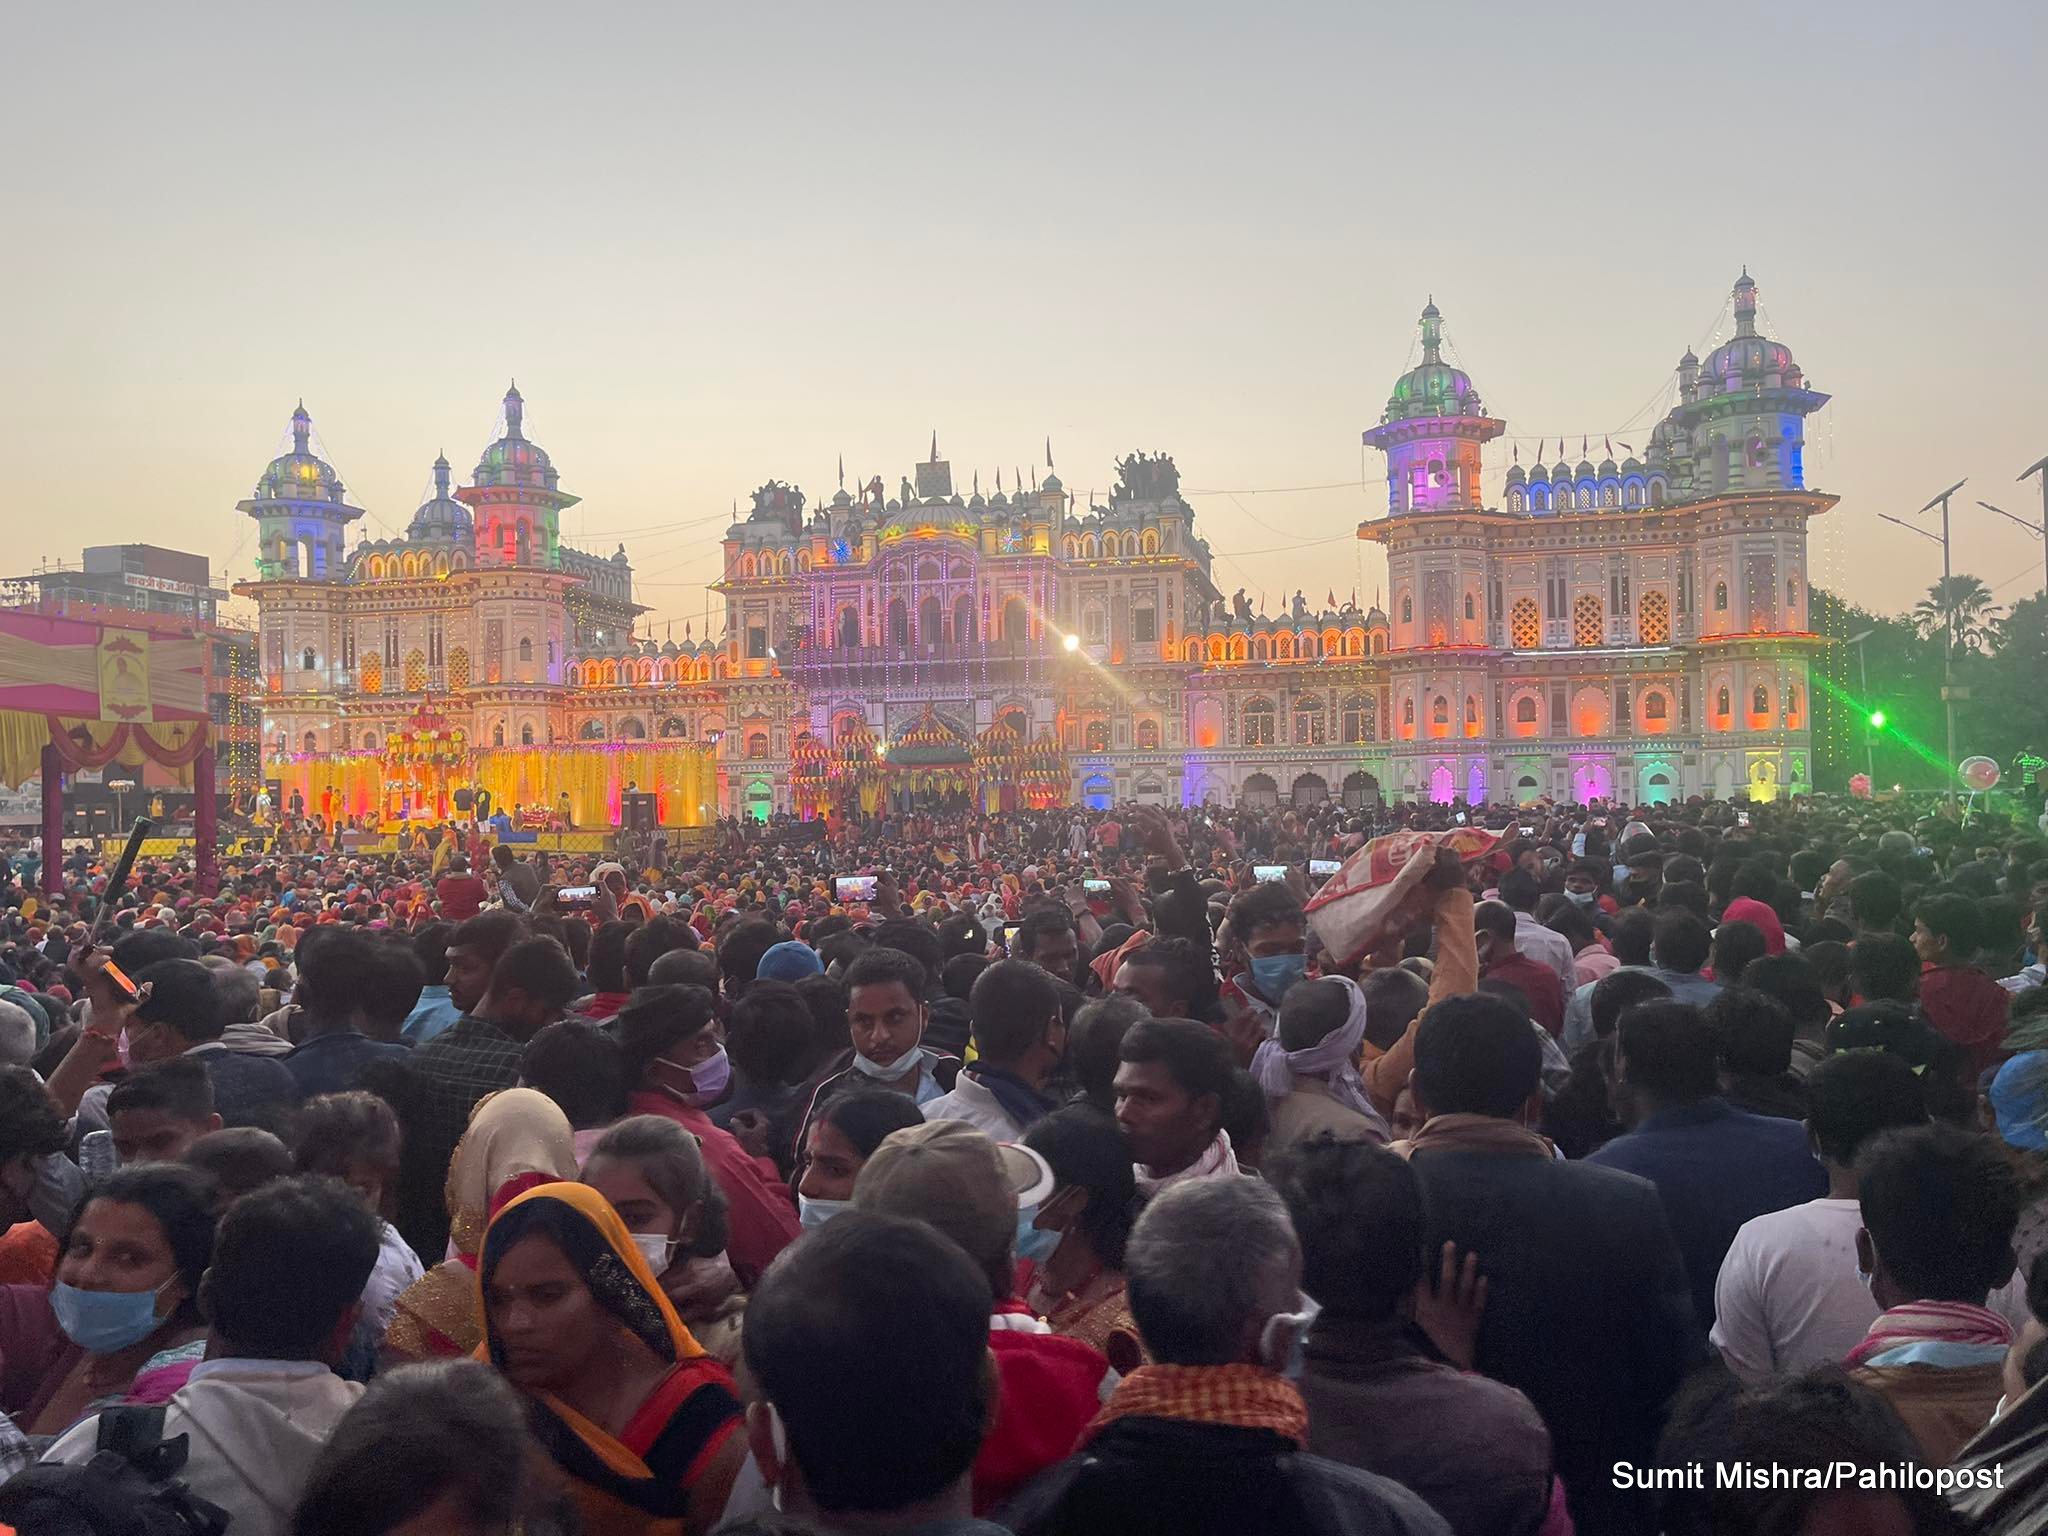 विवाहपञ्चमी : जनकपुरधाममा धुमधामका साथ राम-सीता विवाह उत्सव मनाईँदै